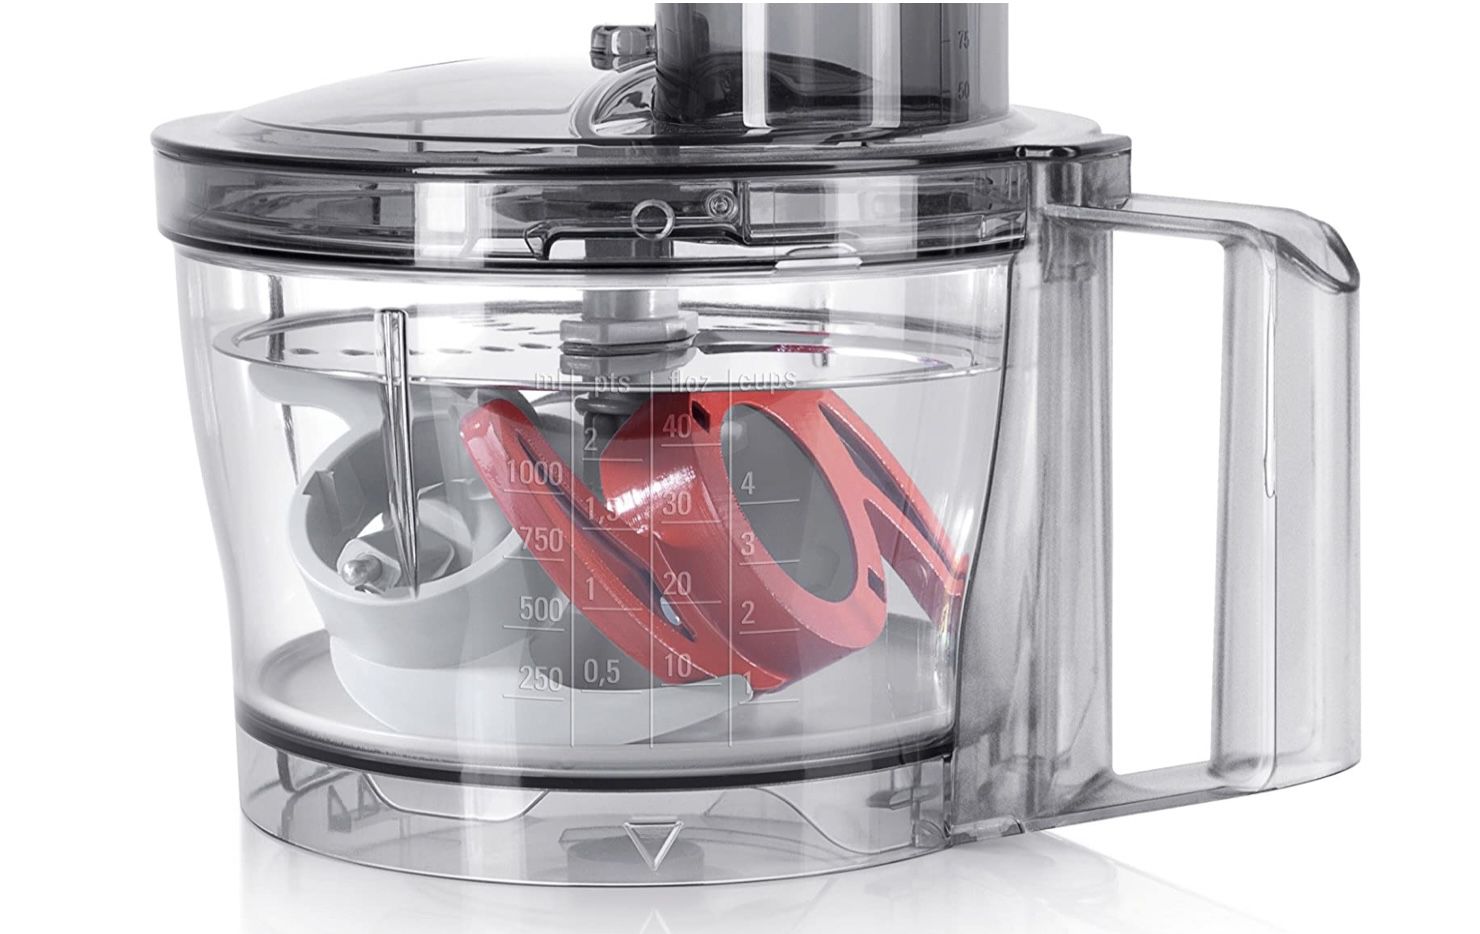 Bosch MultiTalent 3 Kompakt Küchenmaschine für 50,41€ (statt 57€)